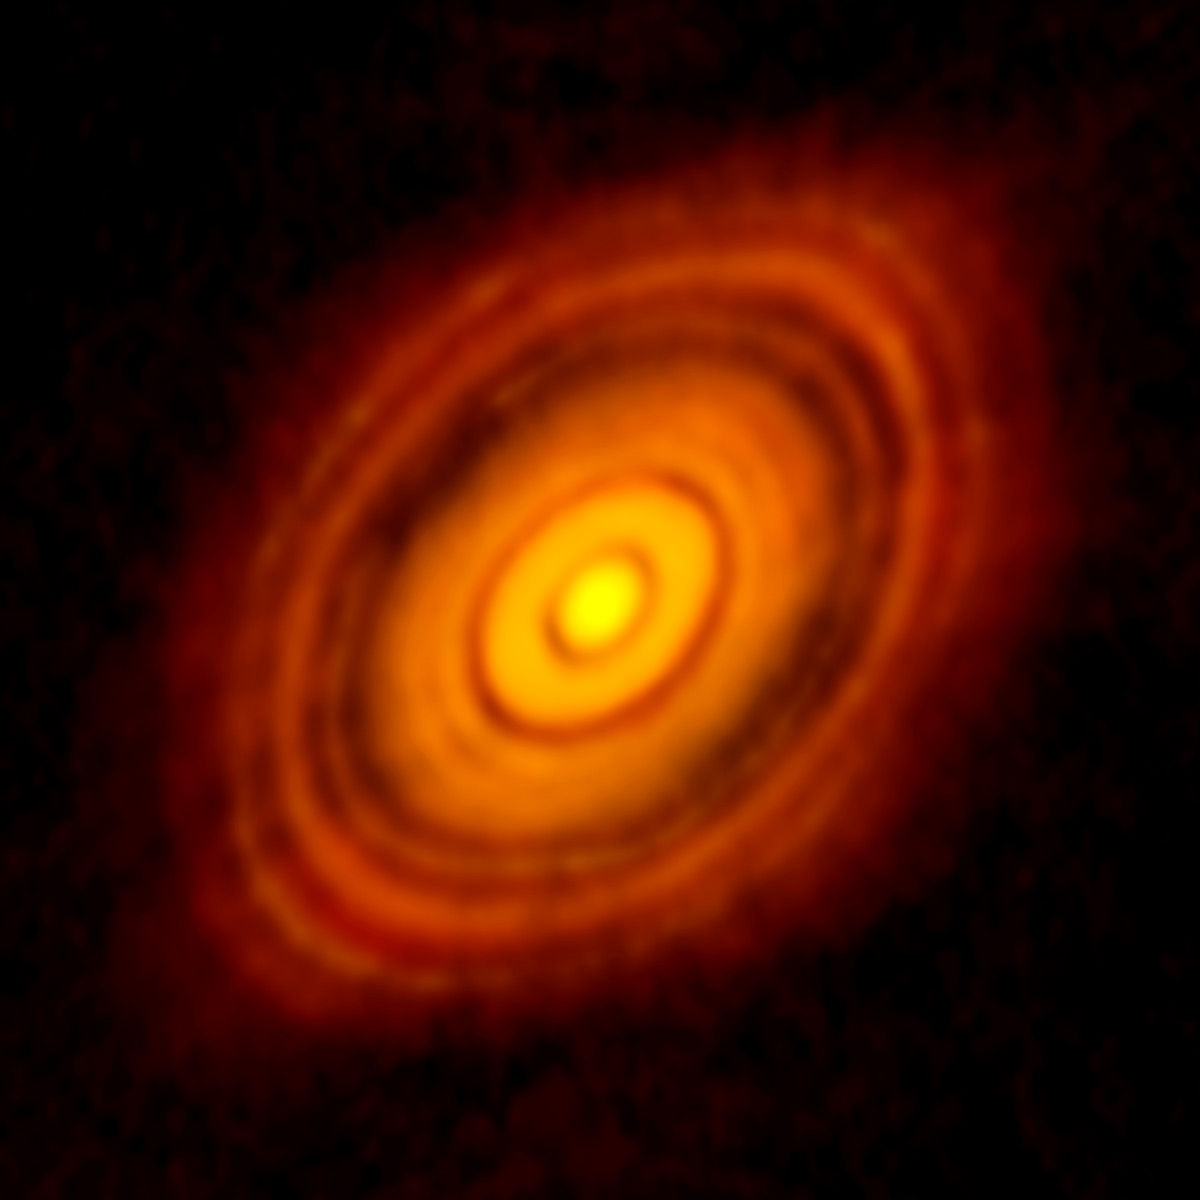 Al centro della foto la stella HL Tau circondata dai dischi protoplanetari (fonte:  https://public.nrao.edu/static/pr/planet-formation-alma.html)